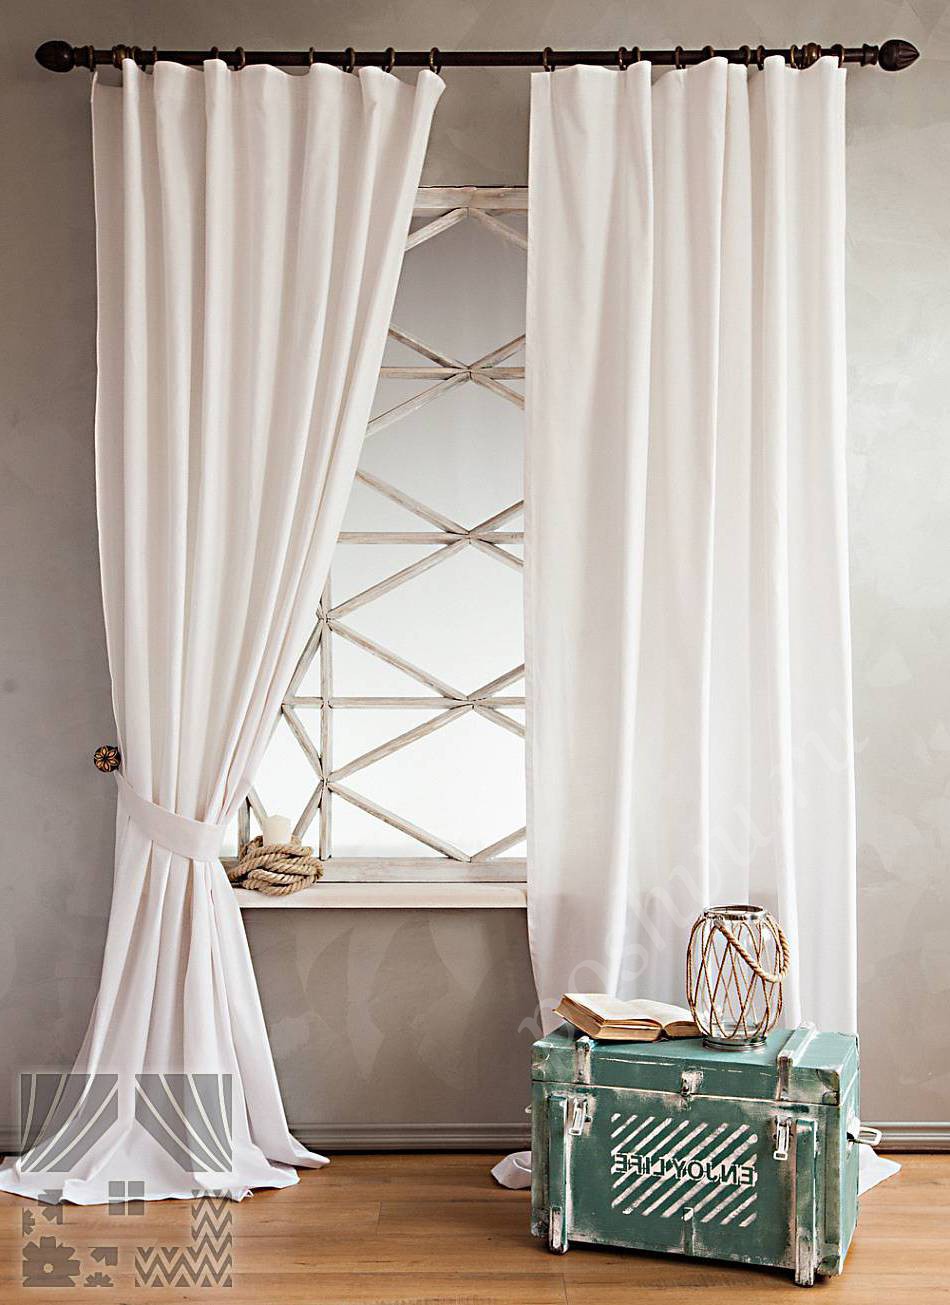 Легкий комплект готовых штор белого цвета для интерьера гостиной или спальни